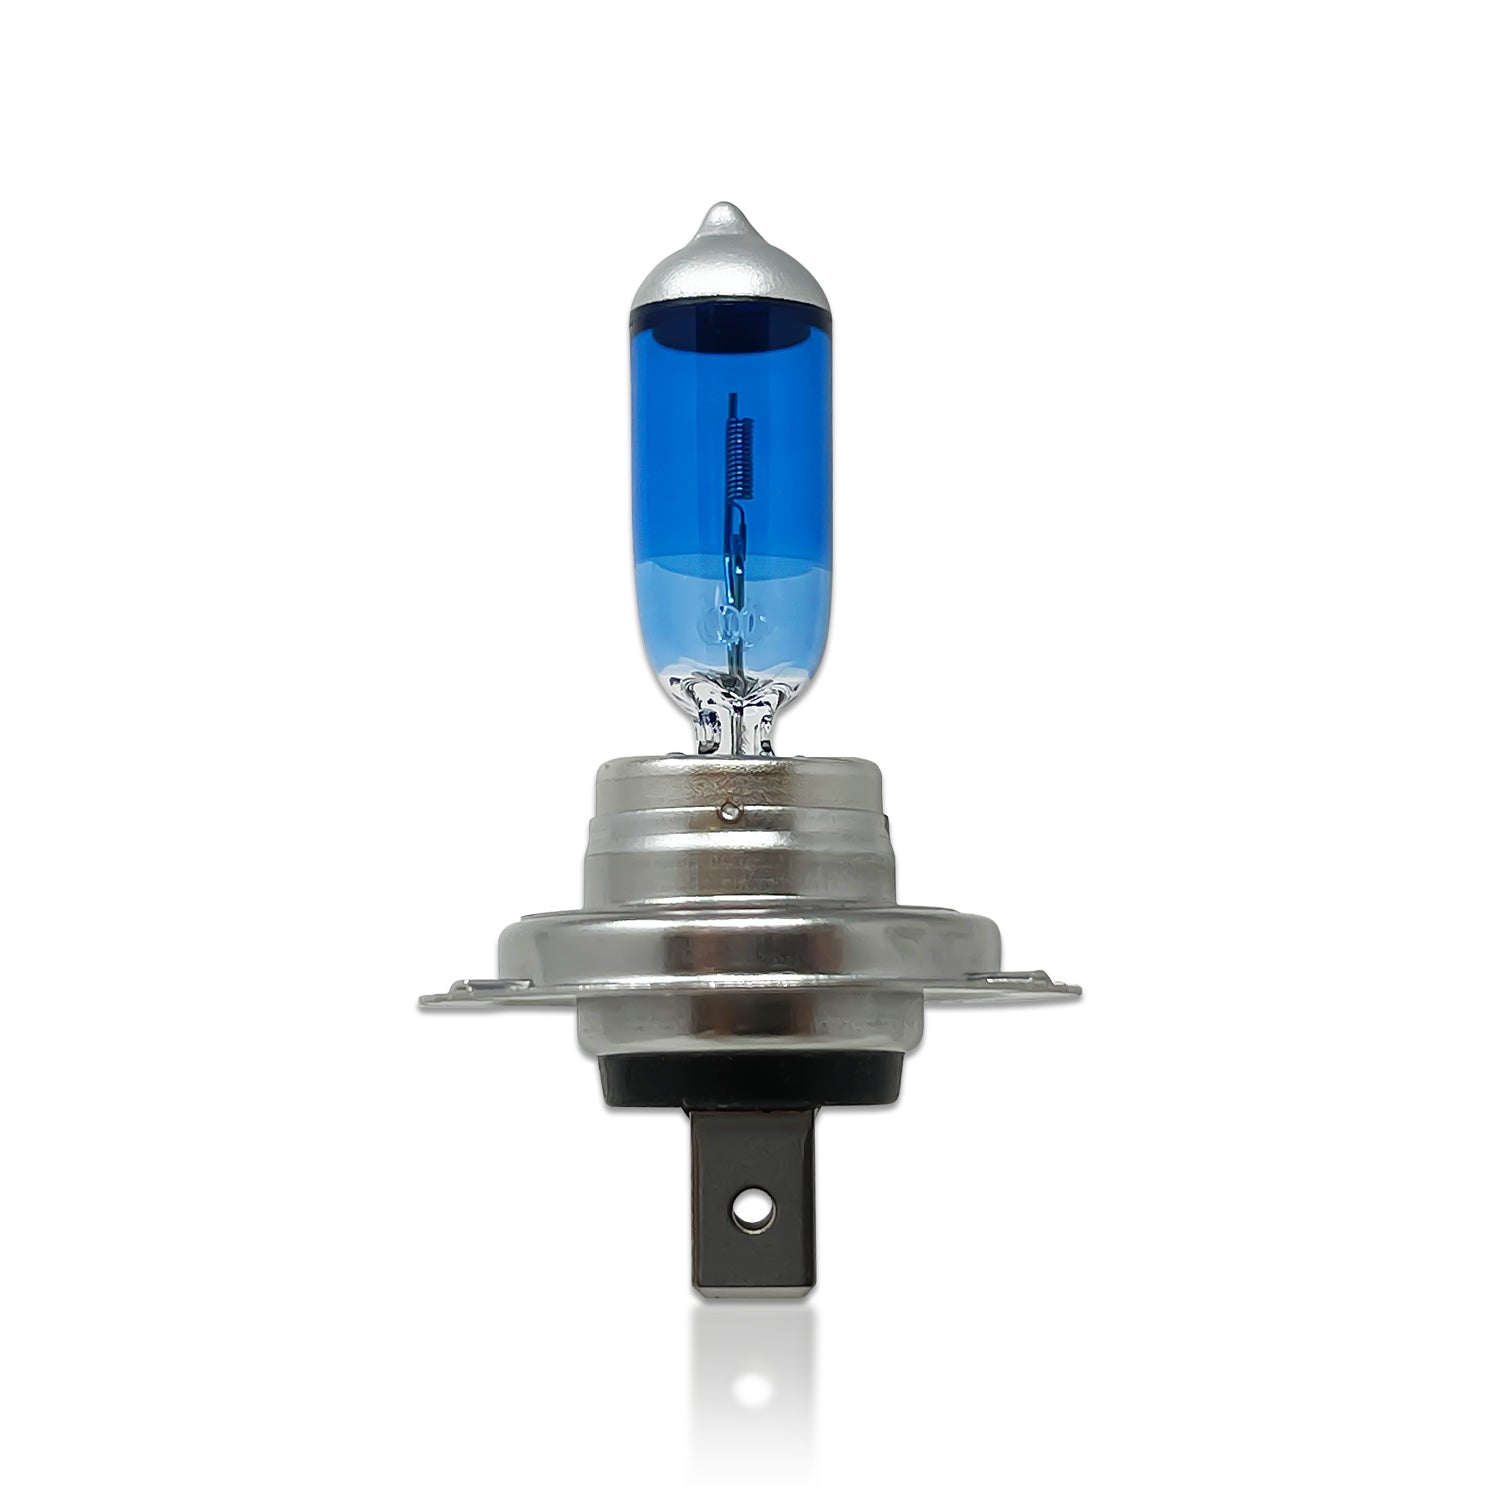 OSRAM 64210CBN-HCB Halogen Leuchtmittel COOL BLUE® INTENSE H7 55 W